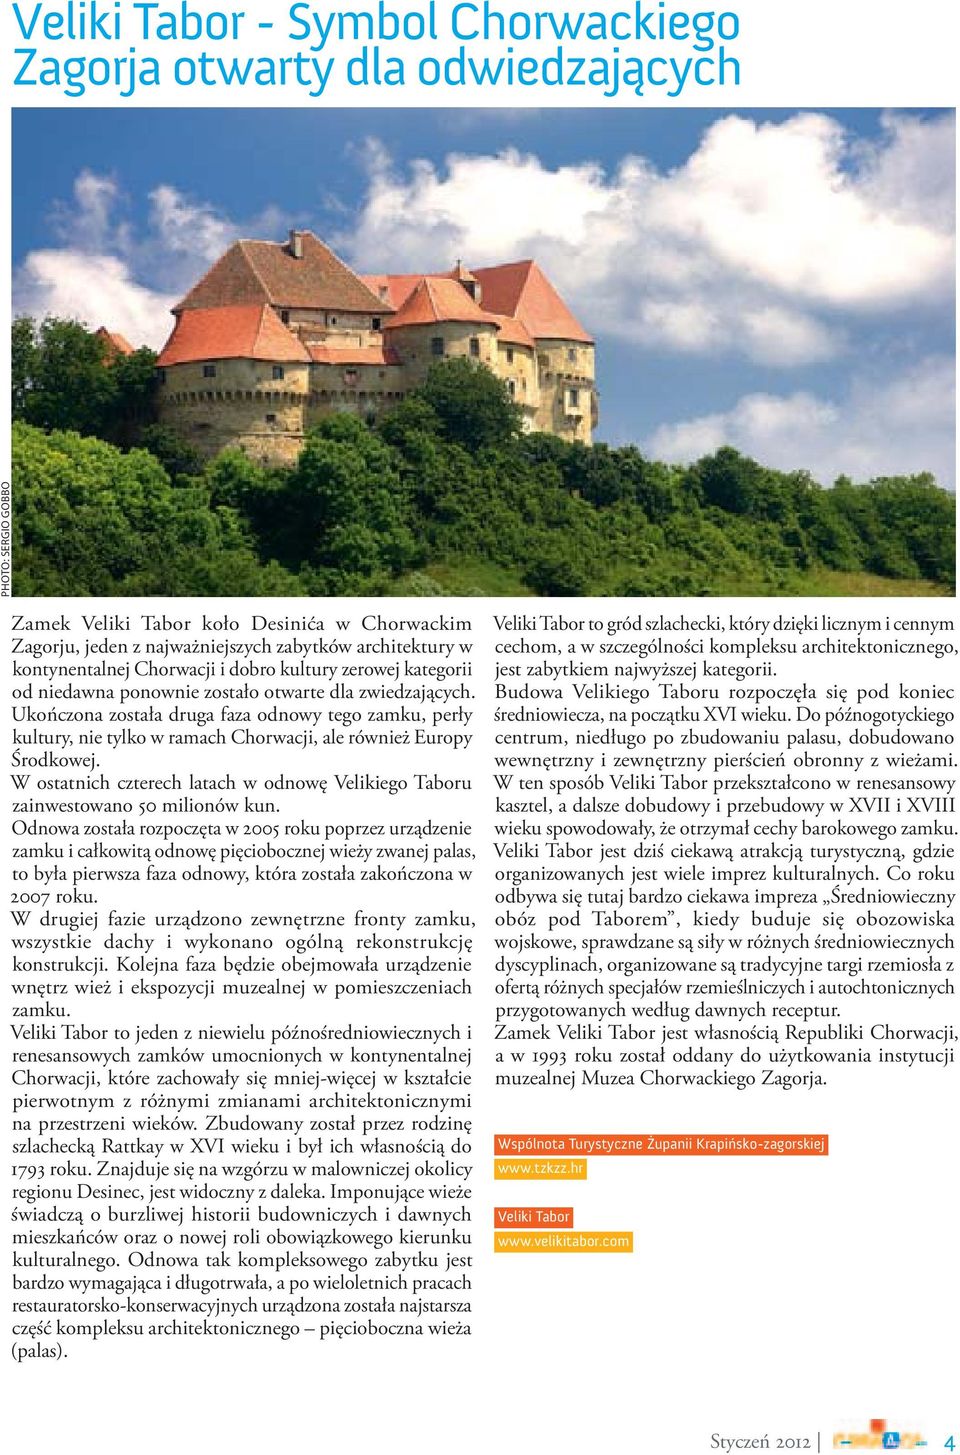 Ukończona została druga faza odnowy tego zamku, perły kultury, nie tylko w ramach Chorwacji, ale również Europy Środkowej.